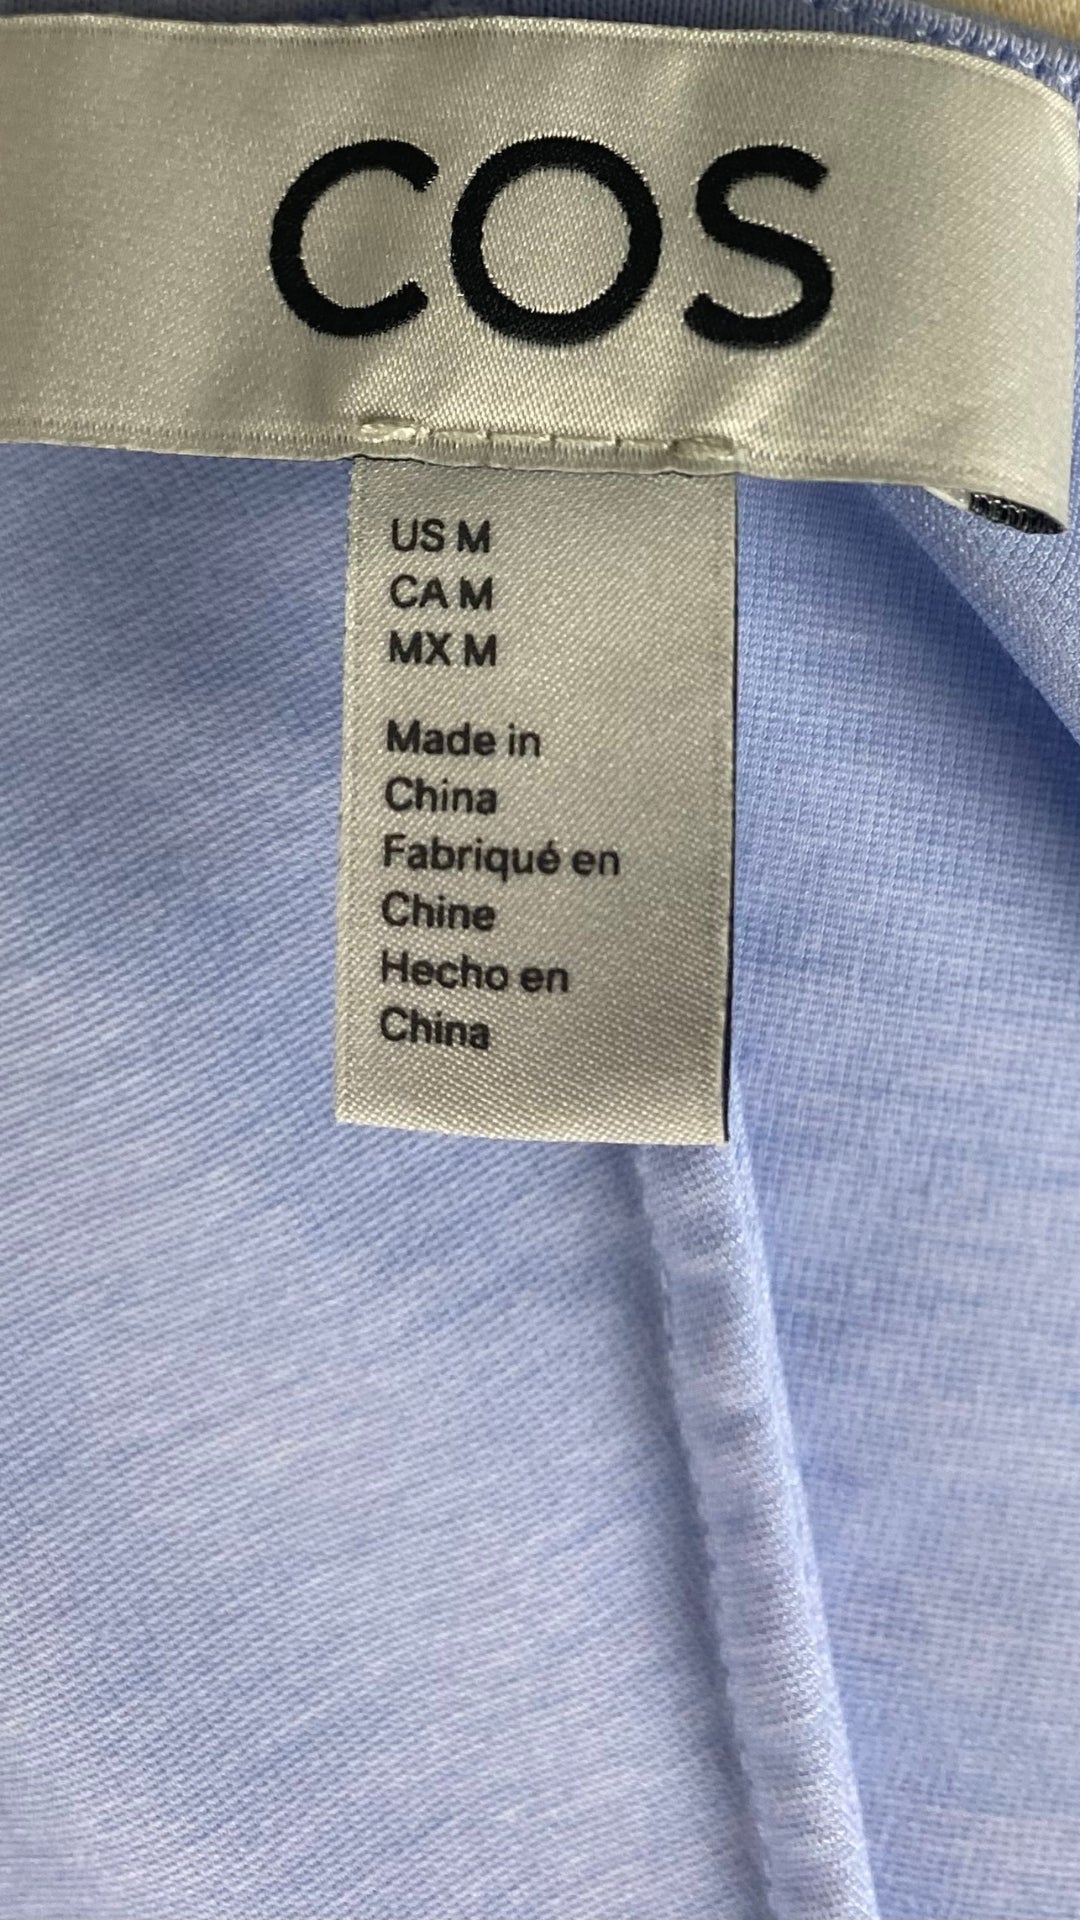 Camisole bleu doux plissée Cos, taille medium. Vue de l'étiquette de marque et taille.